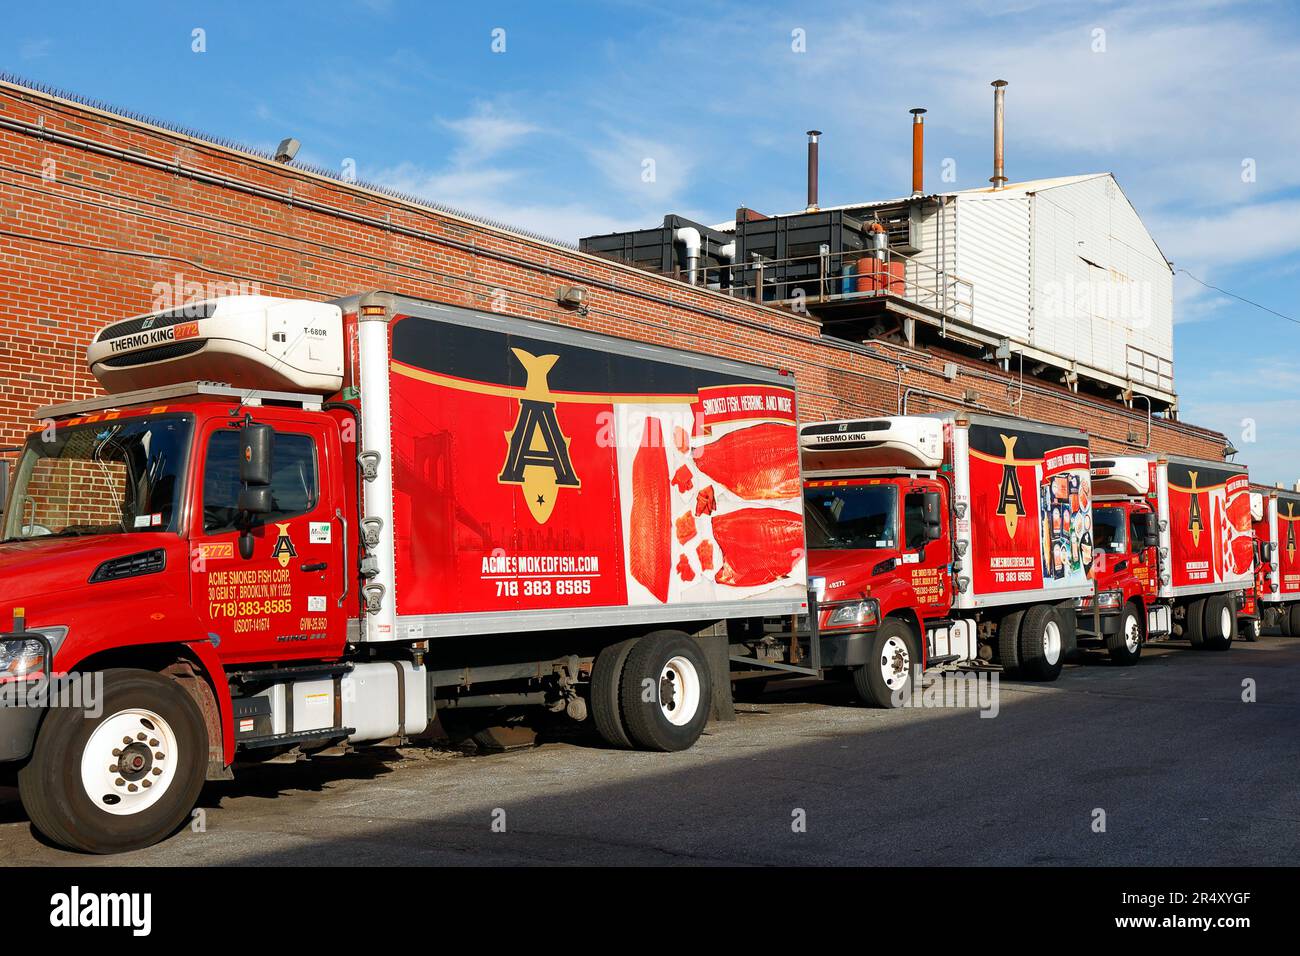 Les camions de livraison de la société Acme Smoked Fish se trouvent à l'usine de traitement Gem St, située au 30, à Brooklyn, et à la maison de fumée, à New York. Banque D'Images